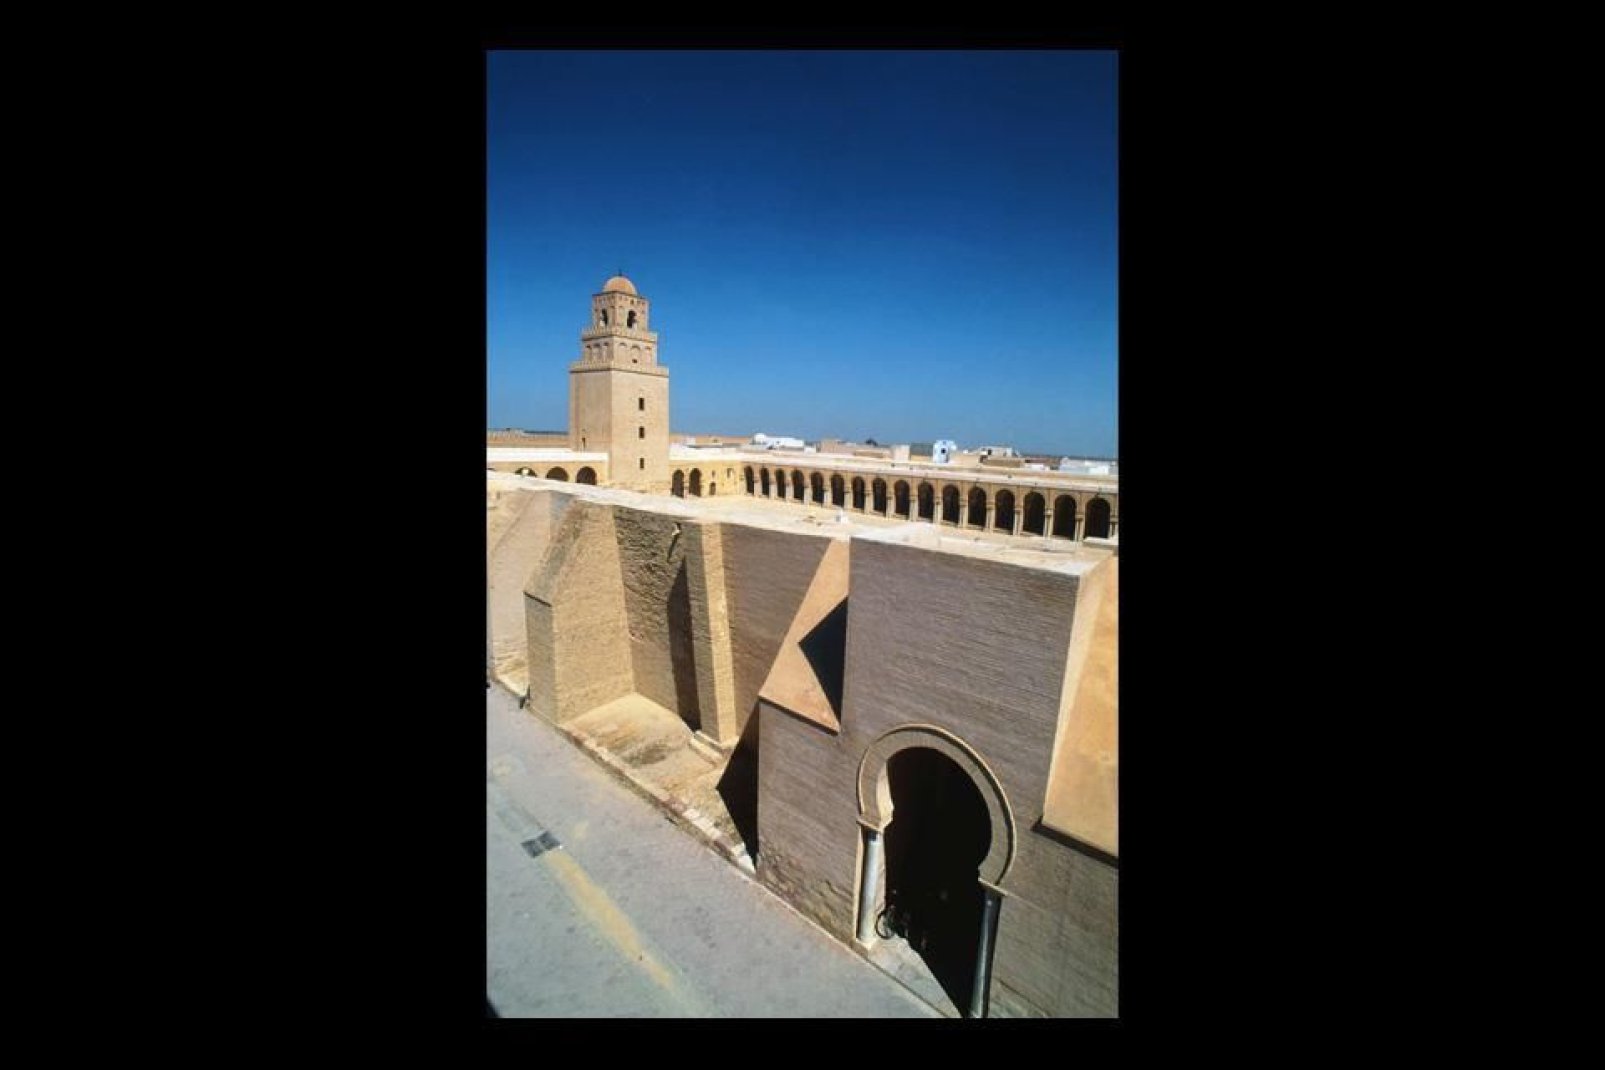 Chef-d'œuvre architectural, la Grande Mosquée a inspiré de nombreuses autres mosquées de la région.